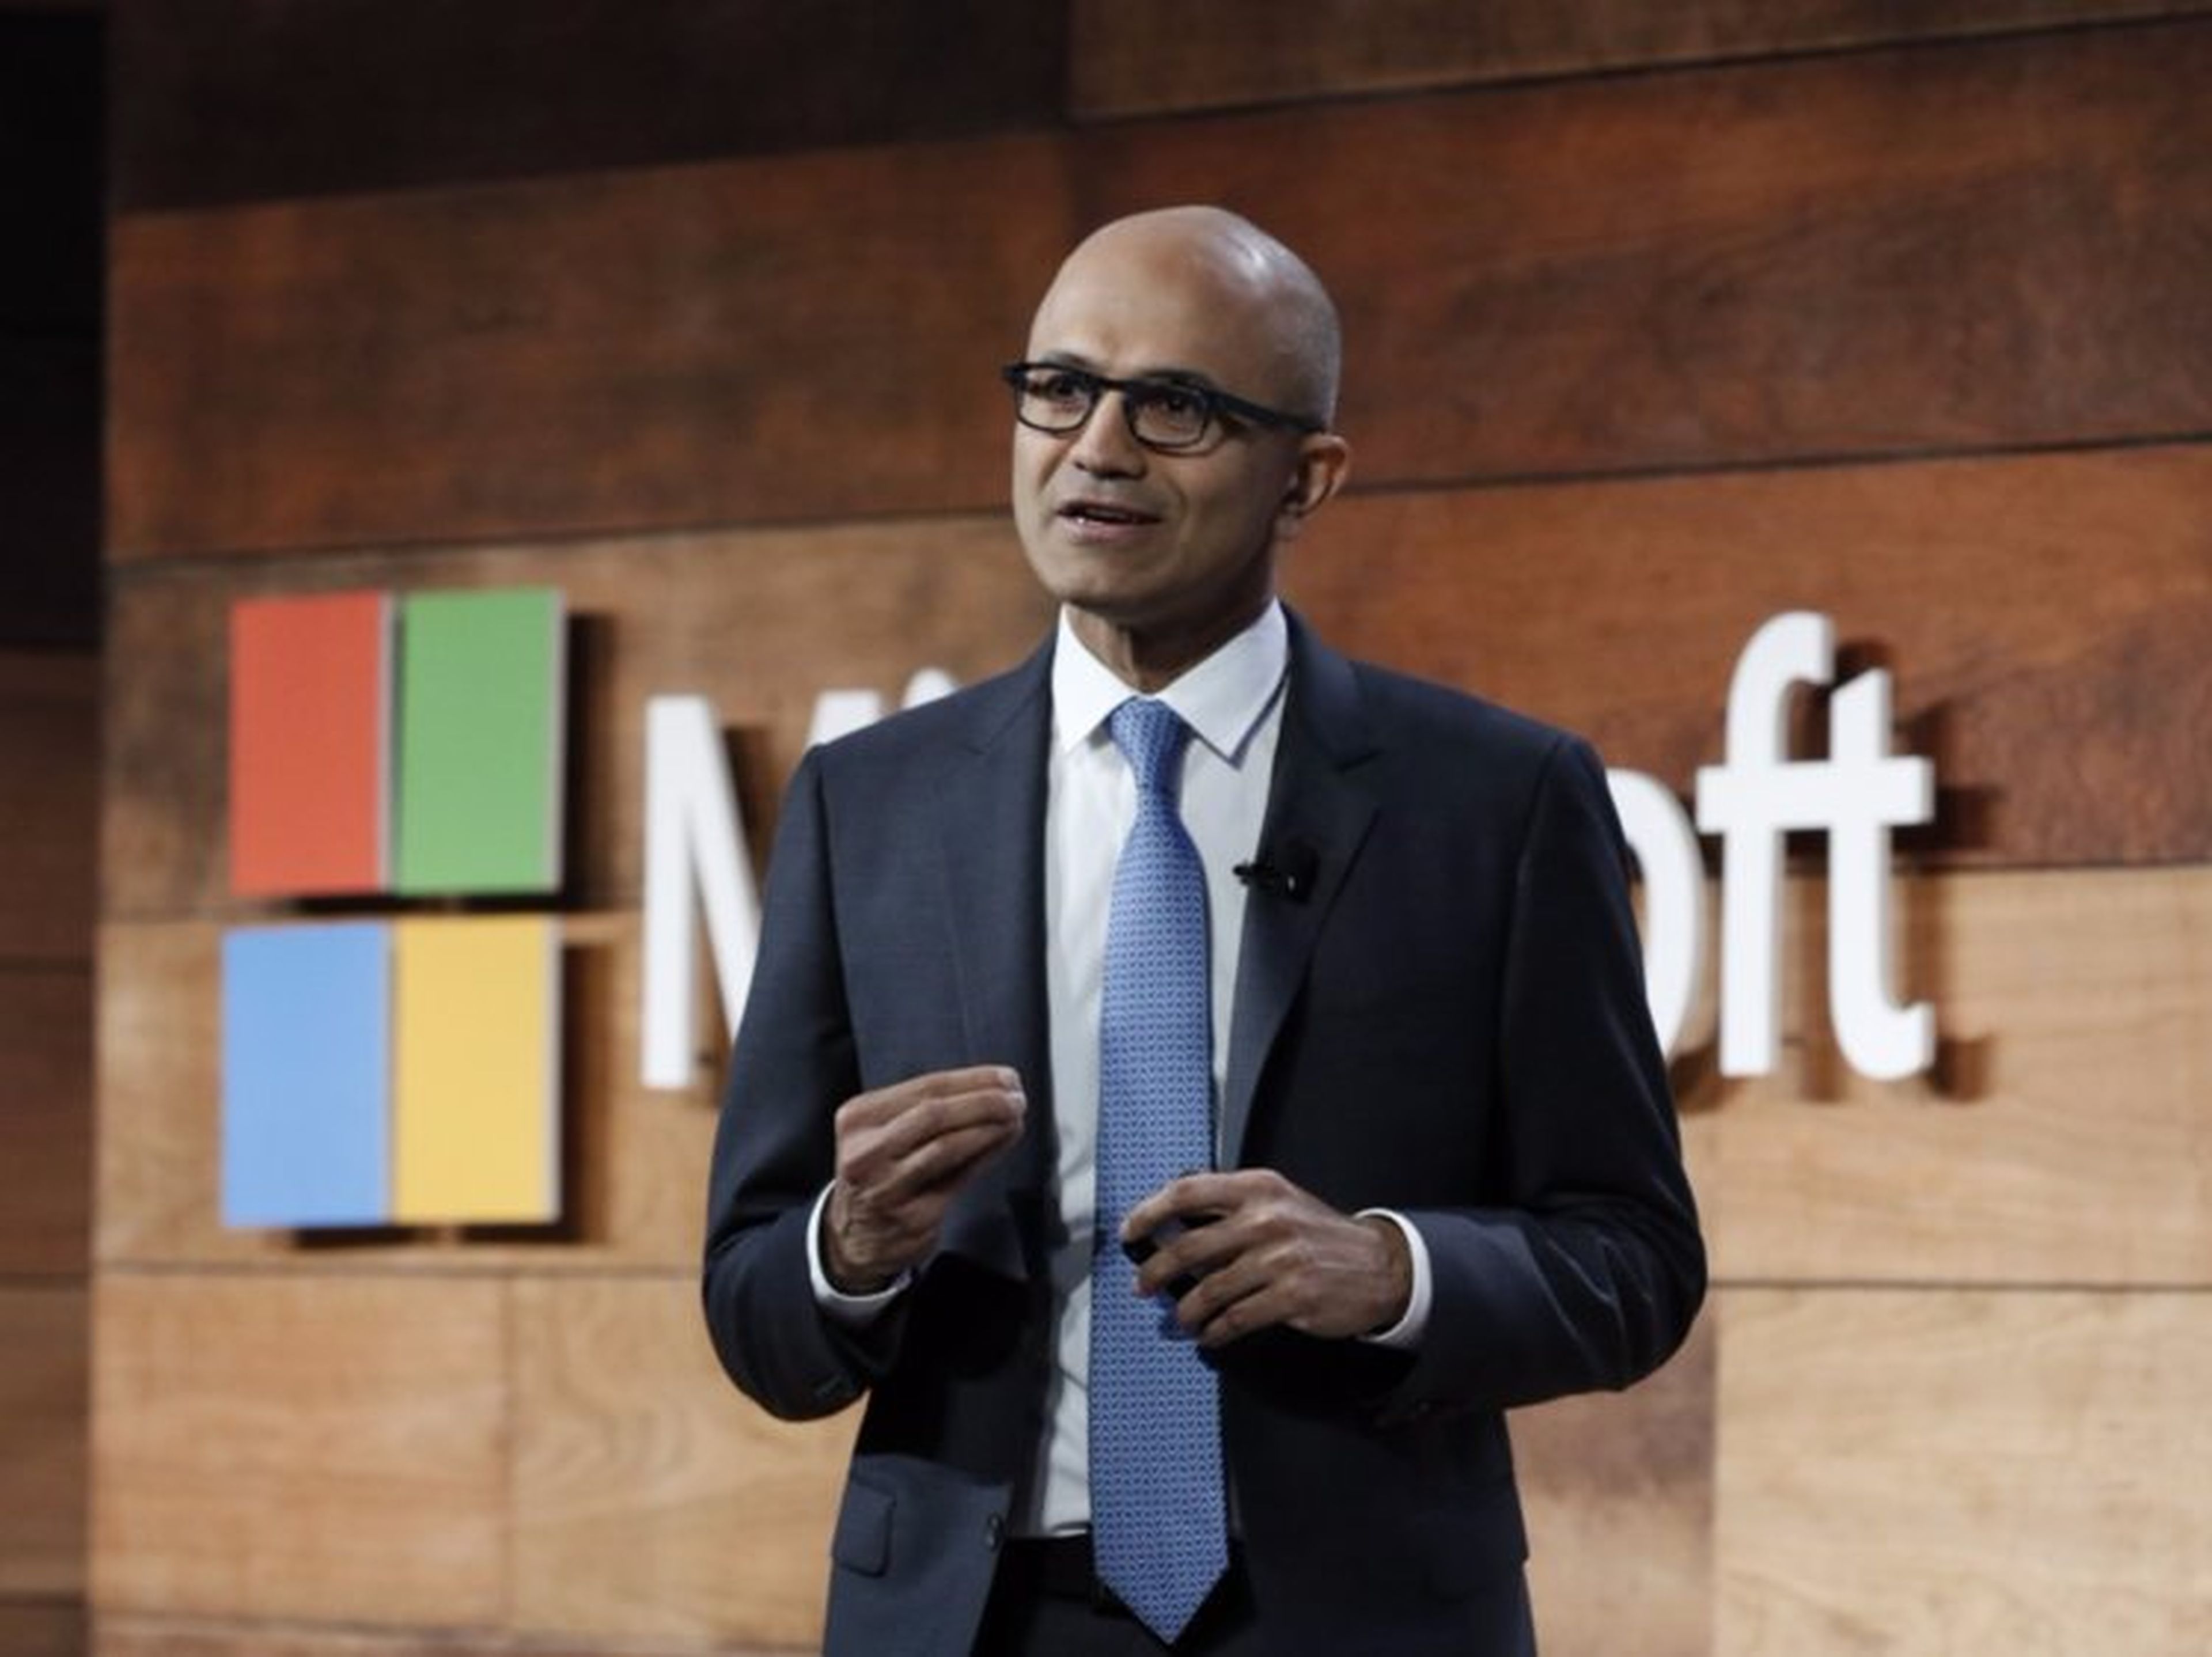 Asistir a la escuela "fue la mejor oportunidad que tuve en mi vida", declaró Satya Nadella, CEO de Microsoft.